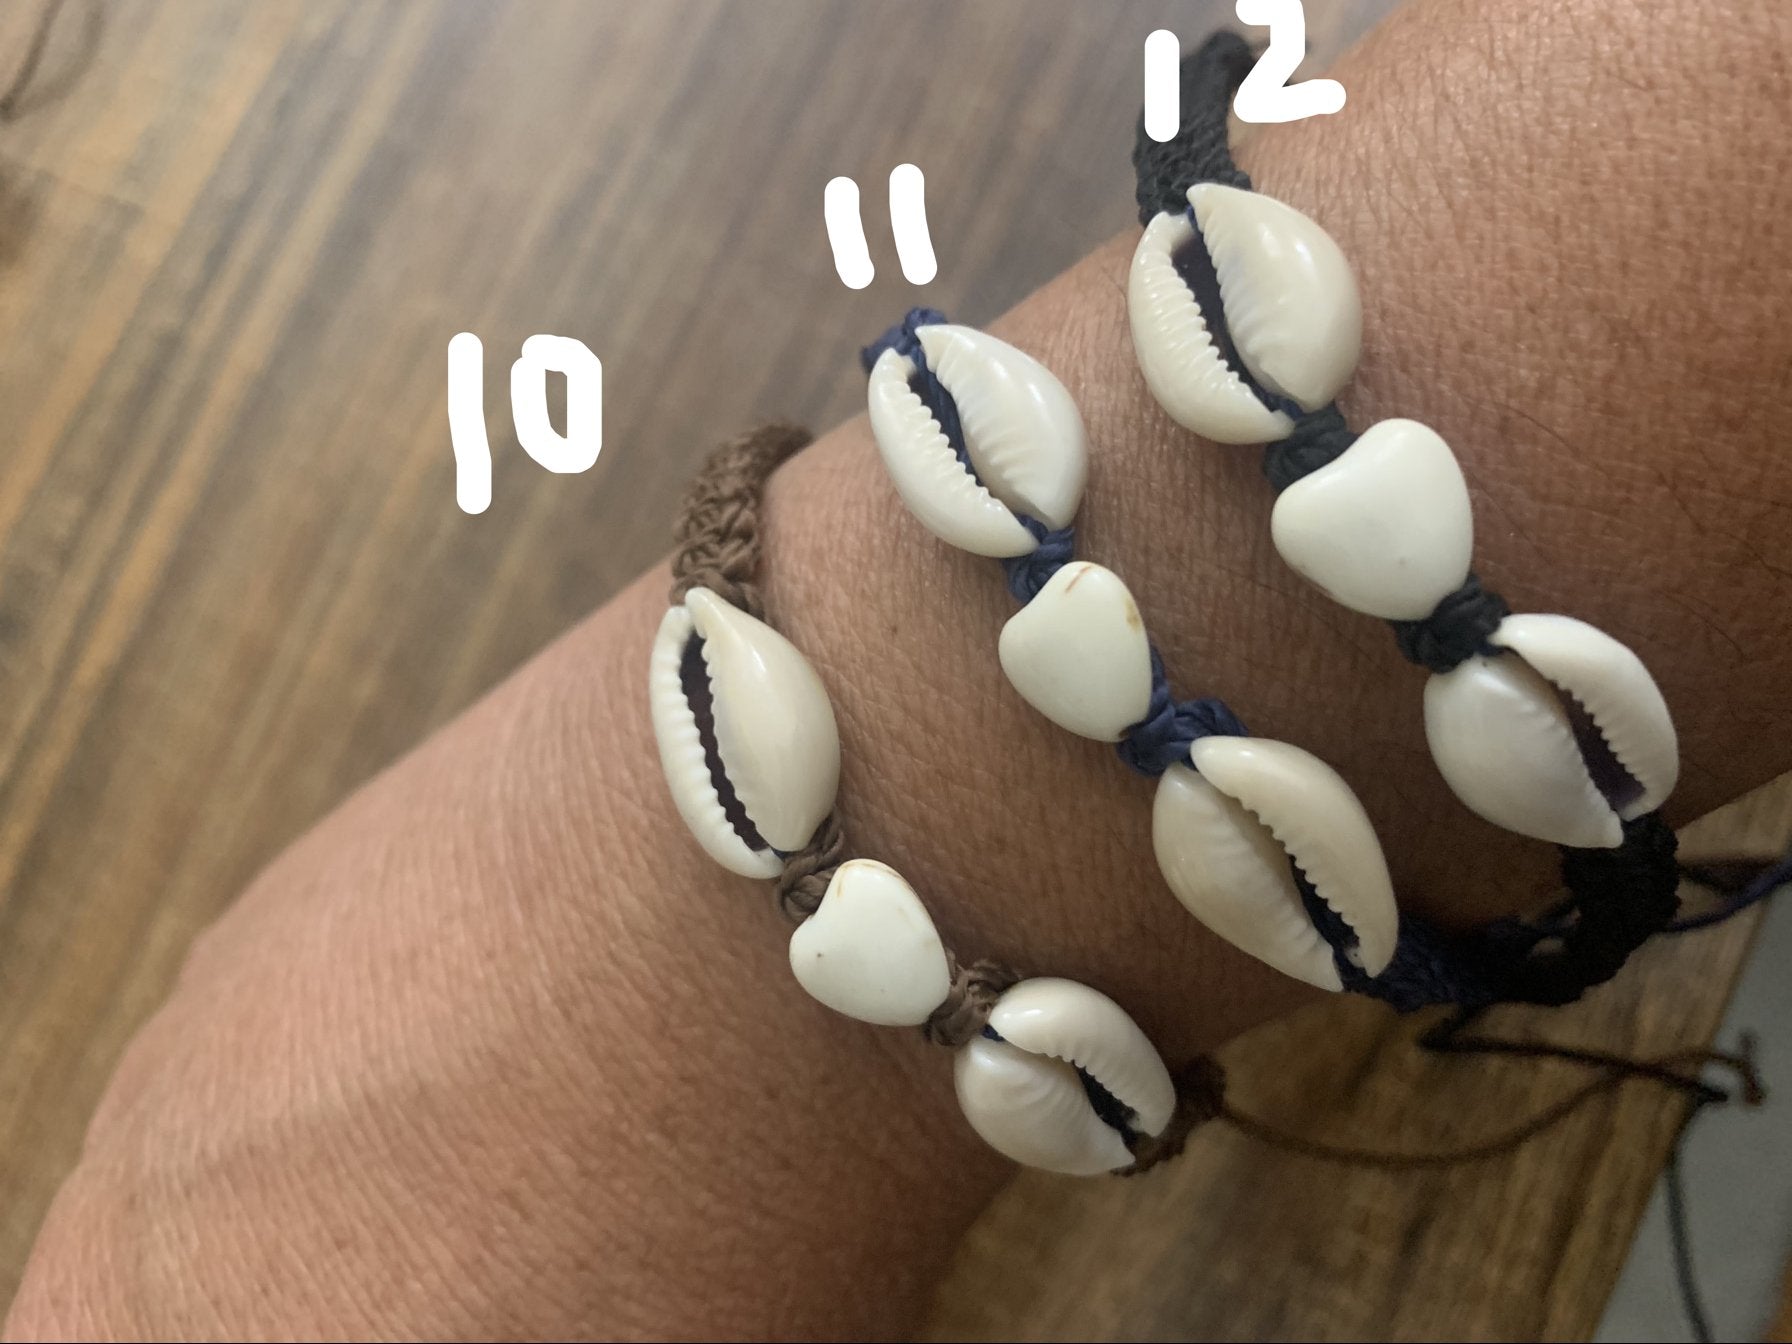 Puka Shell Bracelet (Small) - 6", White Chipped Seashell - Hawaiian,  Elastic | eBay